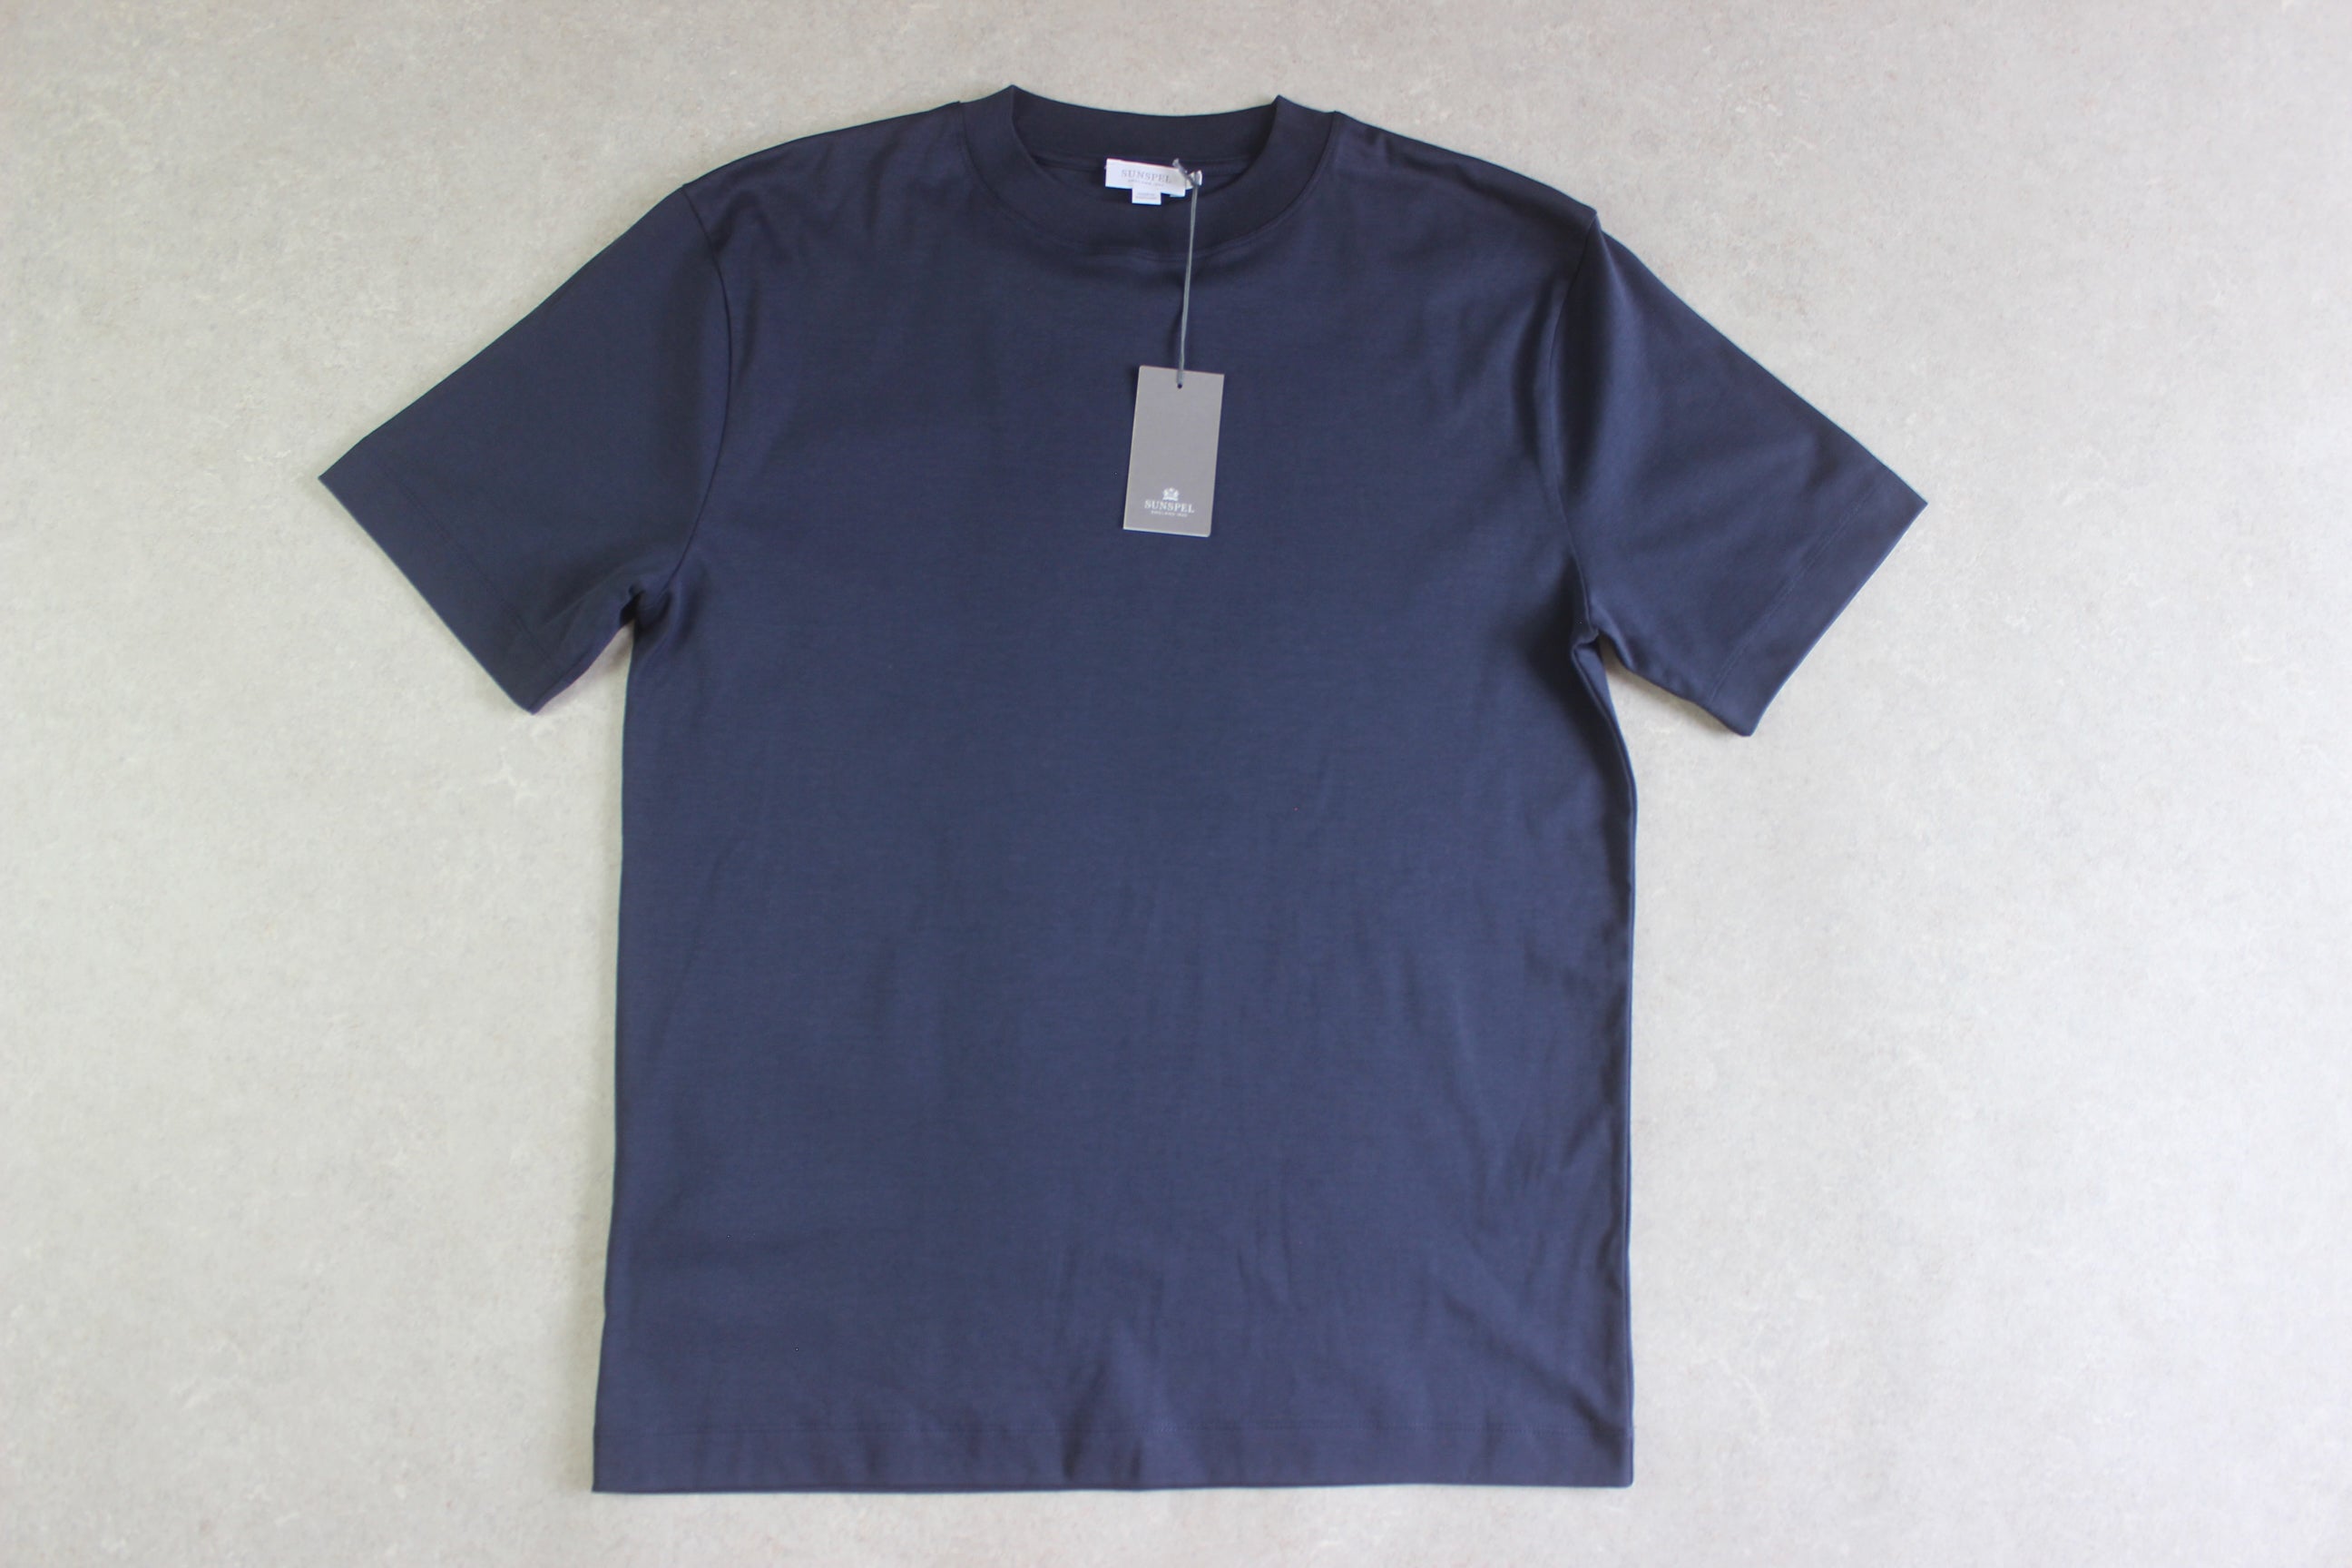 Sunspel - Brand New T Shirt - Navy Blue - Medium